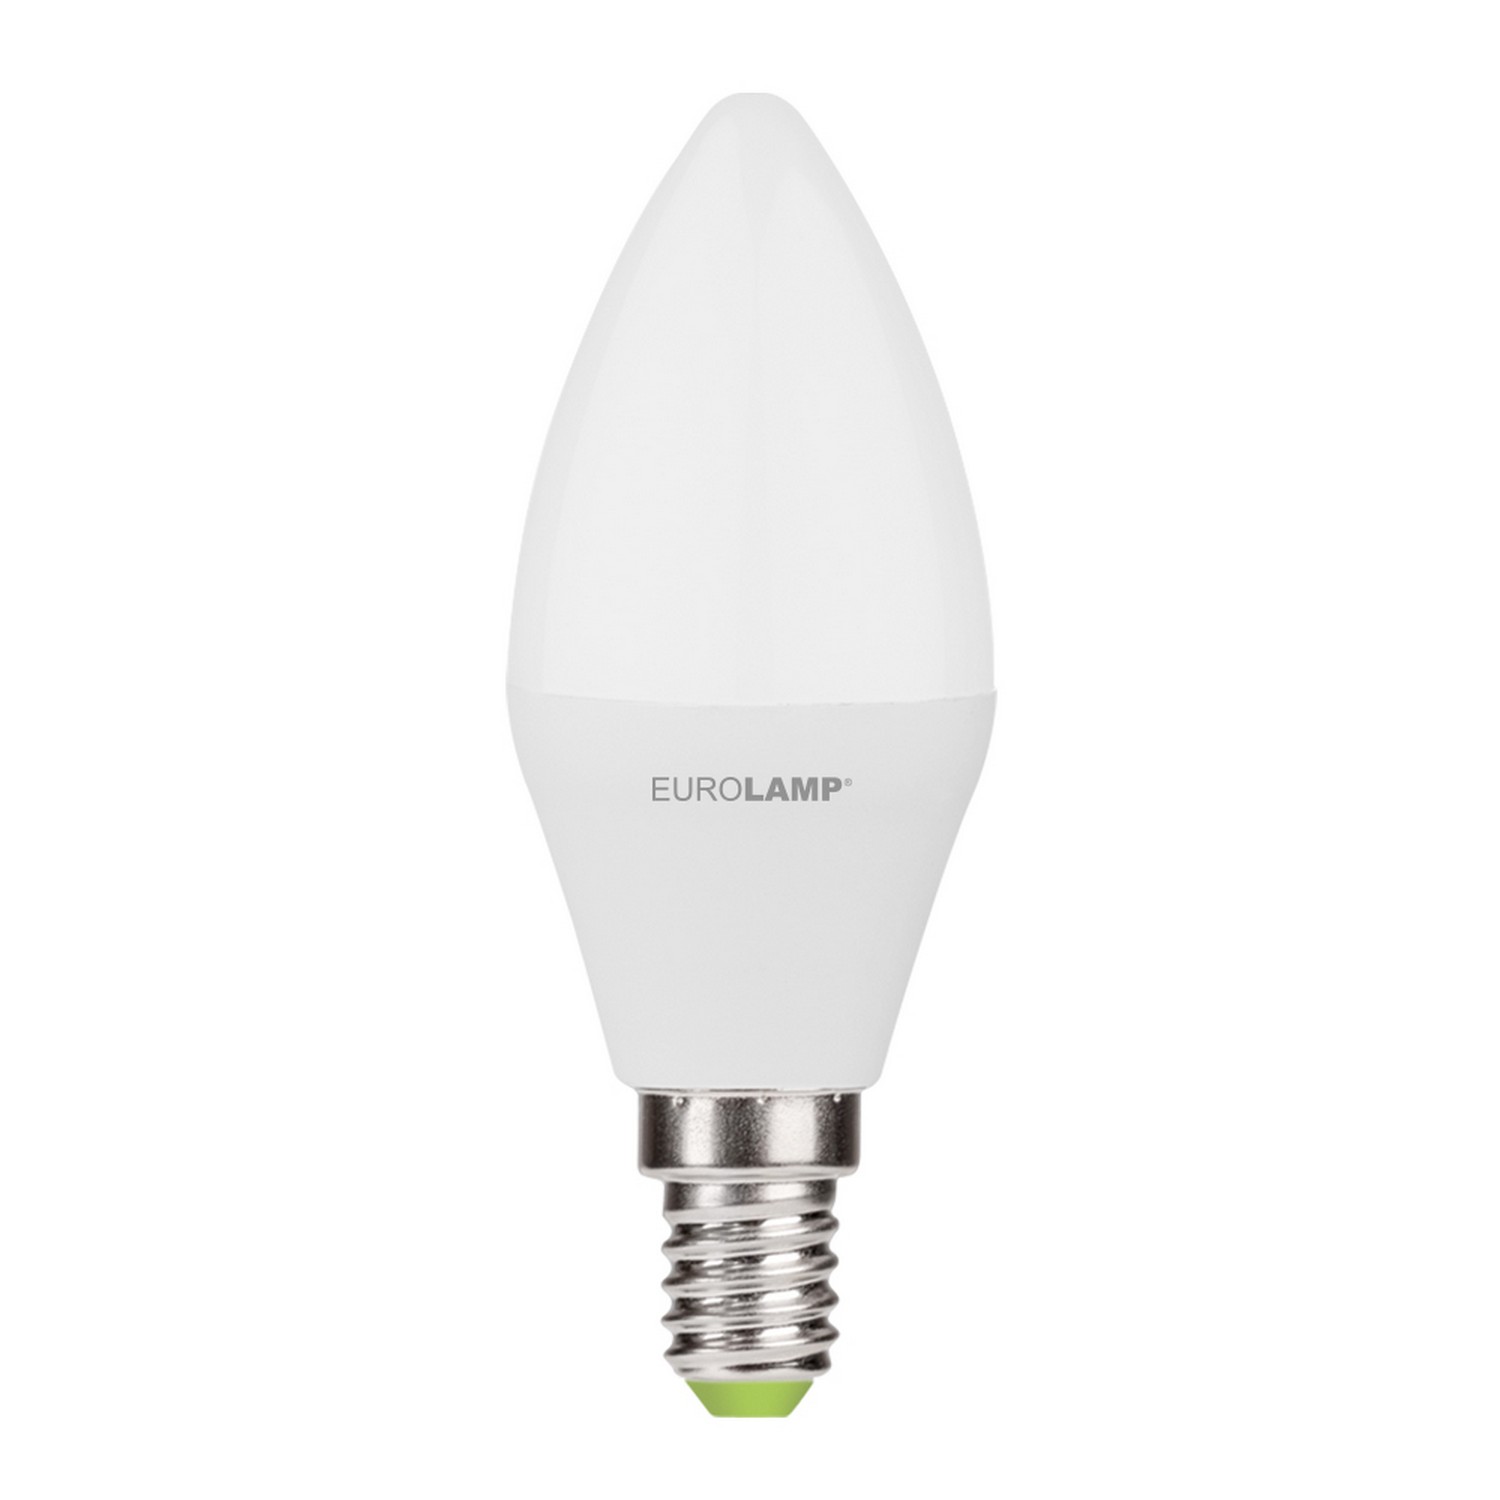 Лампа Eurolamp LED EKO Свеча 7W E14 3000K акция "1+1" цена 0.00 грн - фотография 2